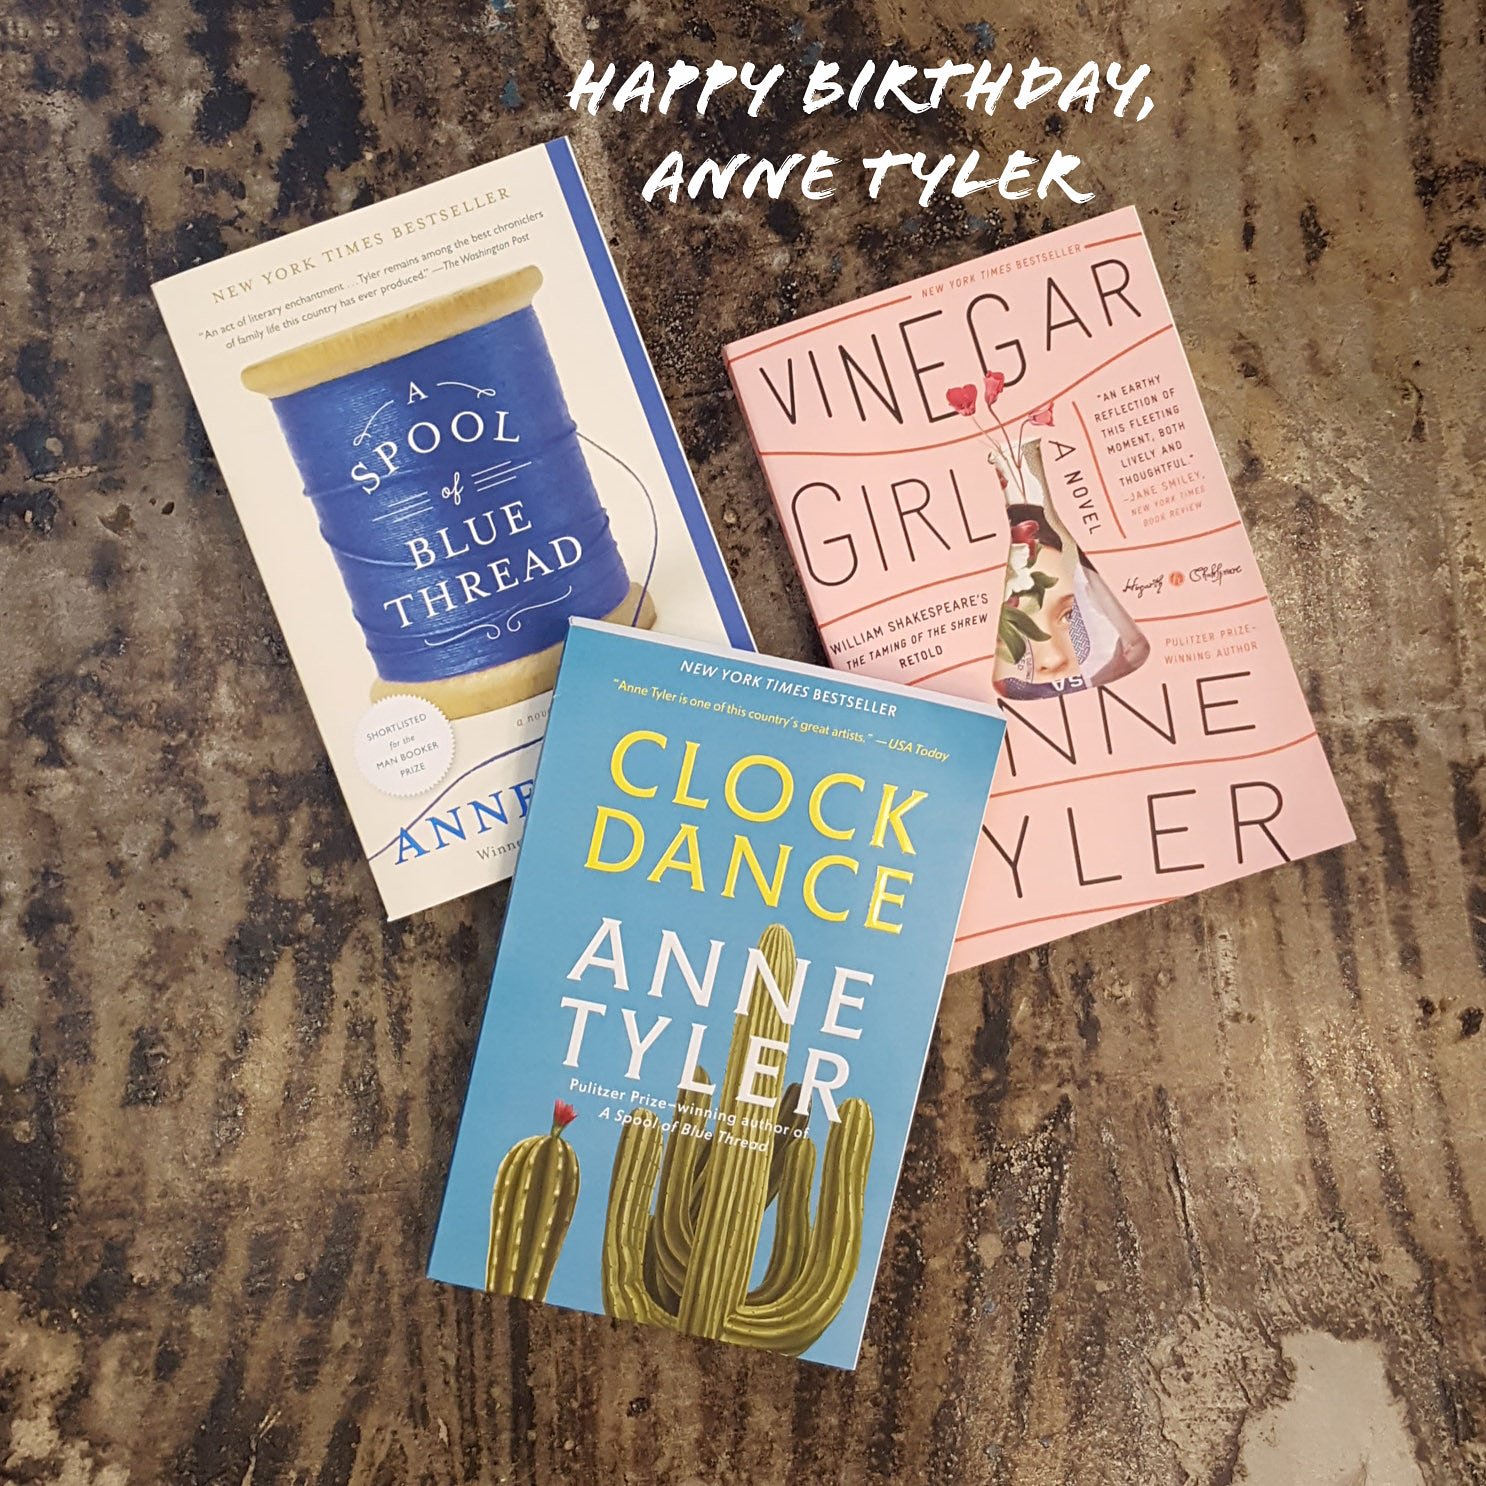 Happy birthday, Anne Tyler!   